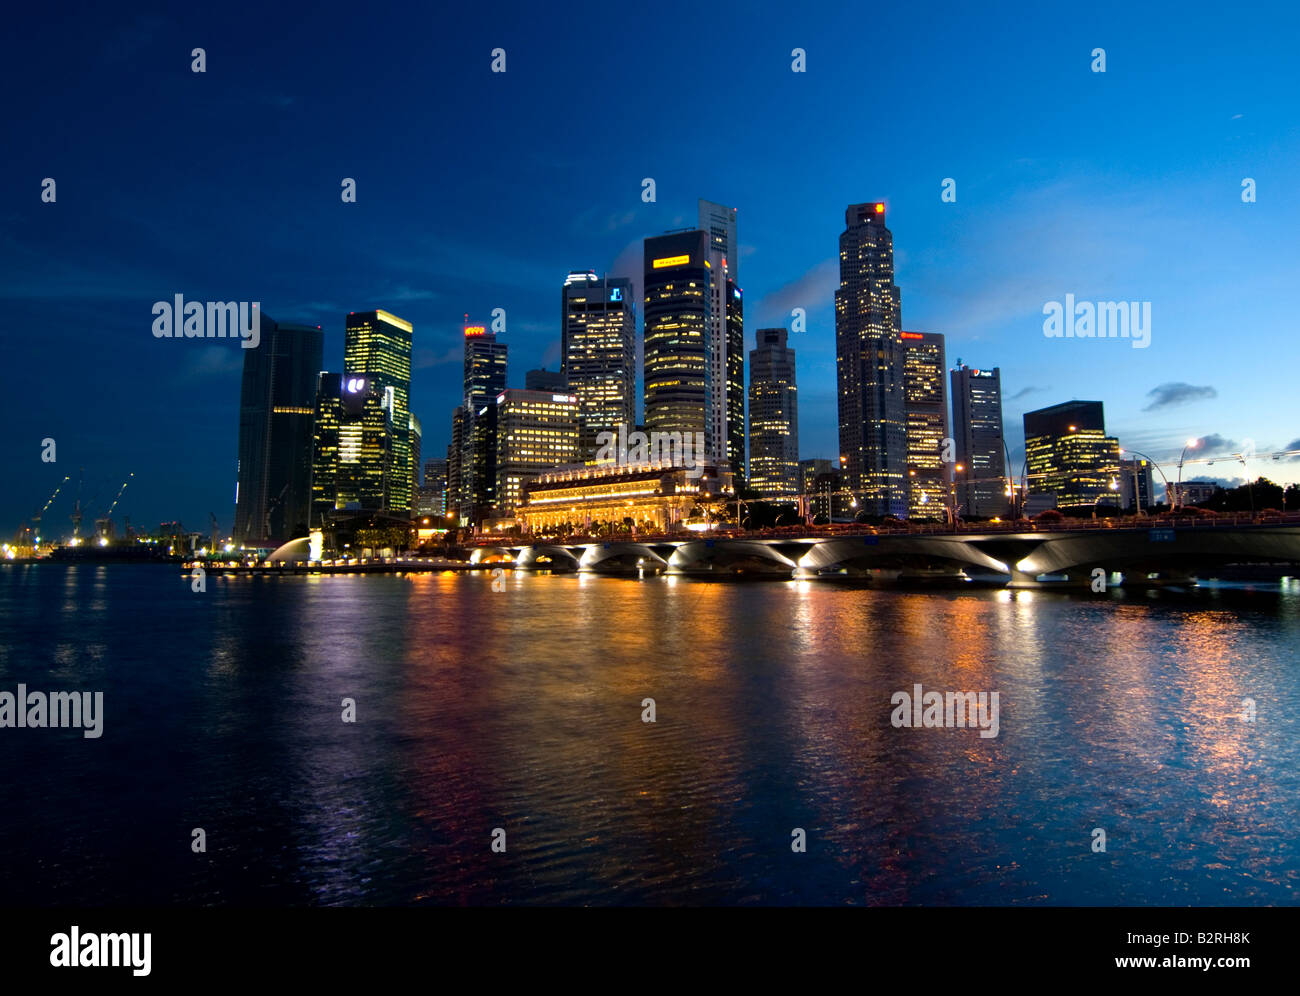 El distrito central de negocios (CDB), Skyline al atardecer, Singapur Foto de stock